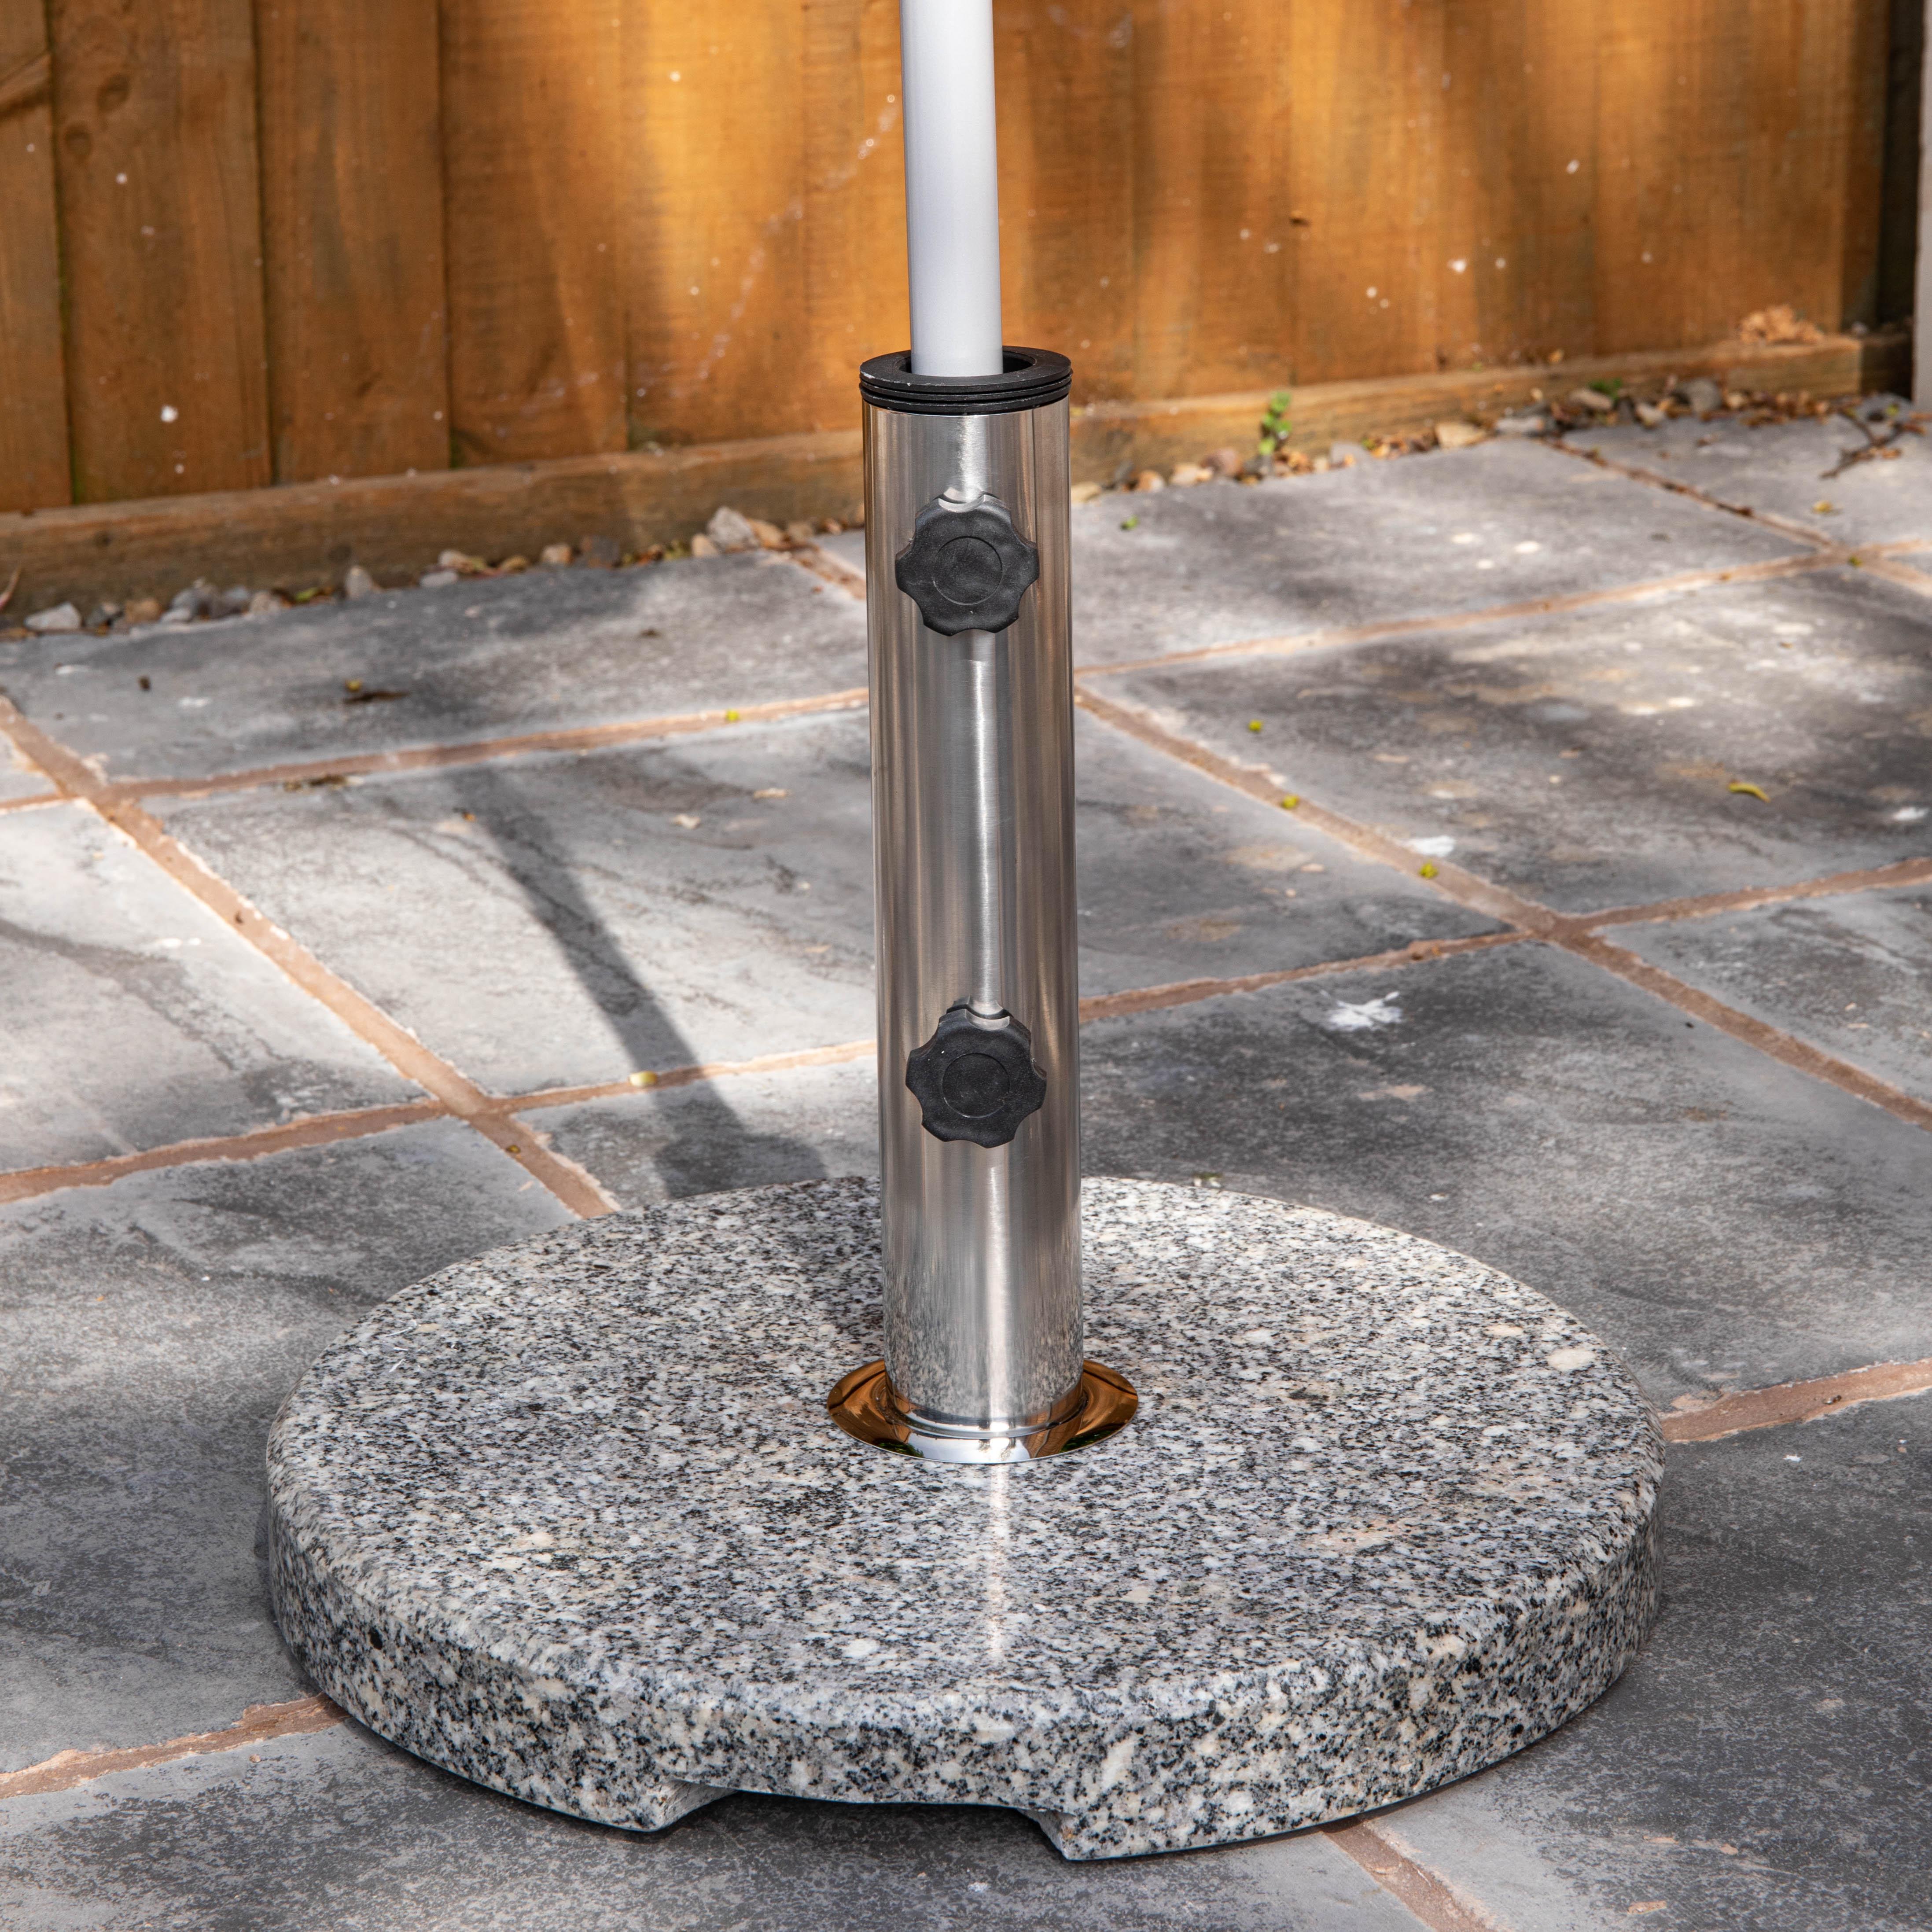 15kg Round Granite Garden Parasol / Umbrella Base Weight Stainless Steel Pole